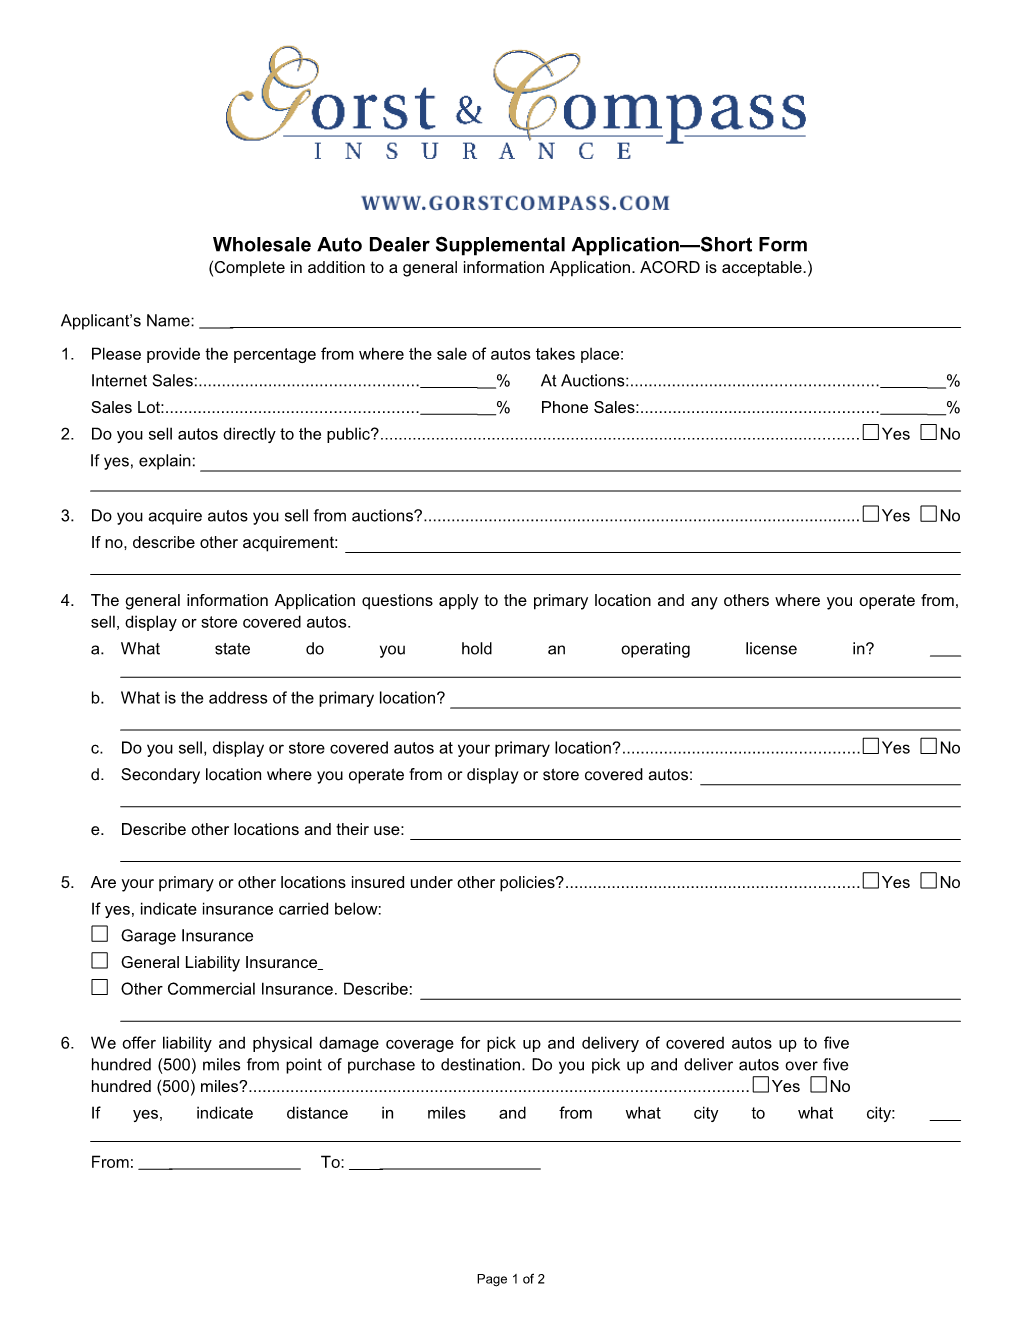 Wholesale Auto Dealer Supplemental Application Short Form